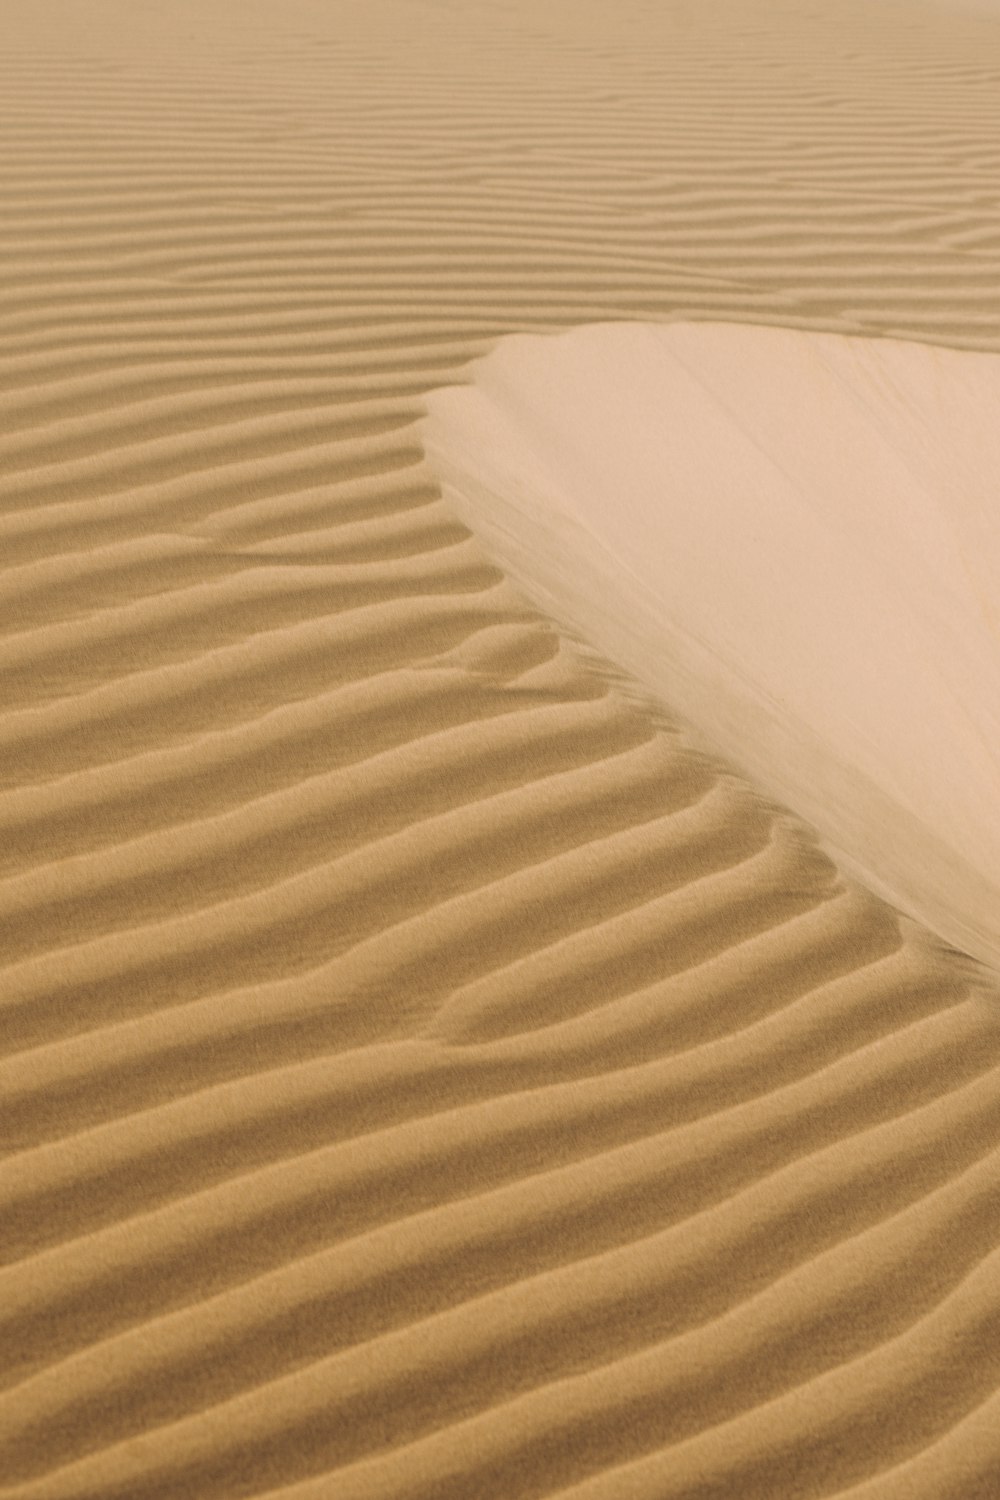 white textile on brown sand